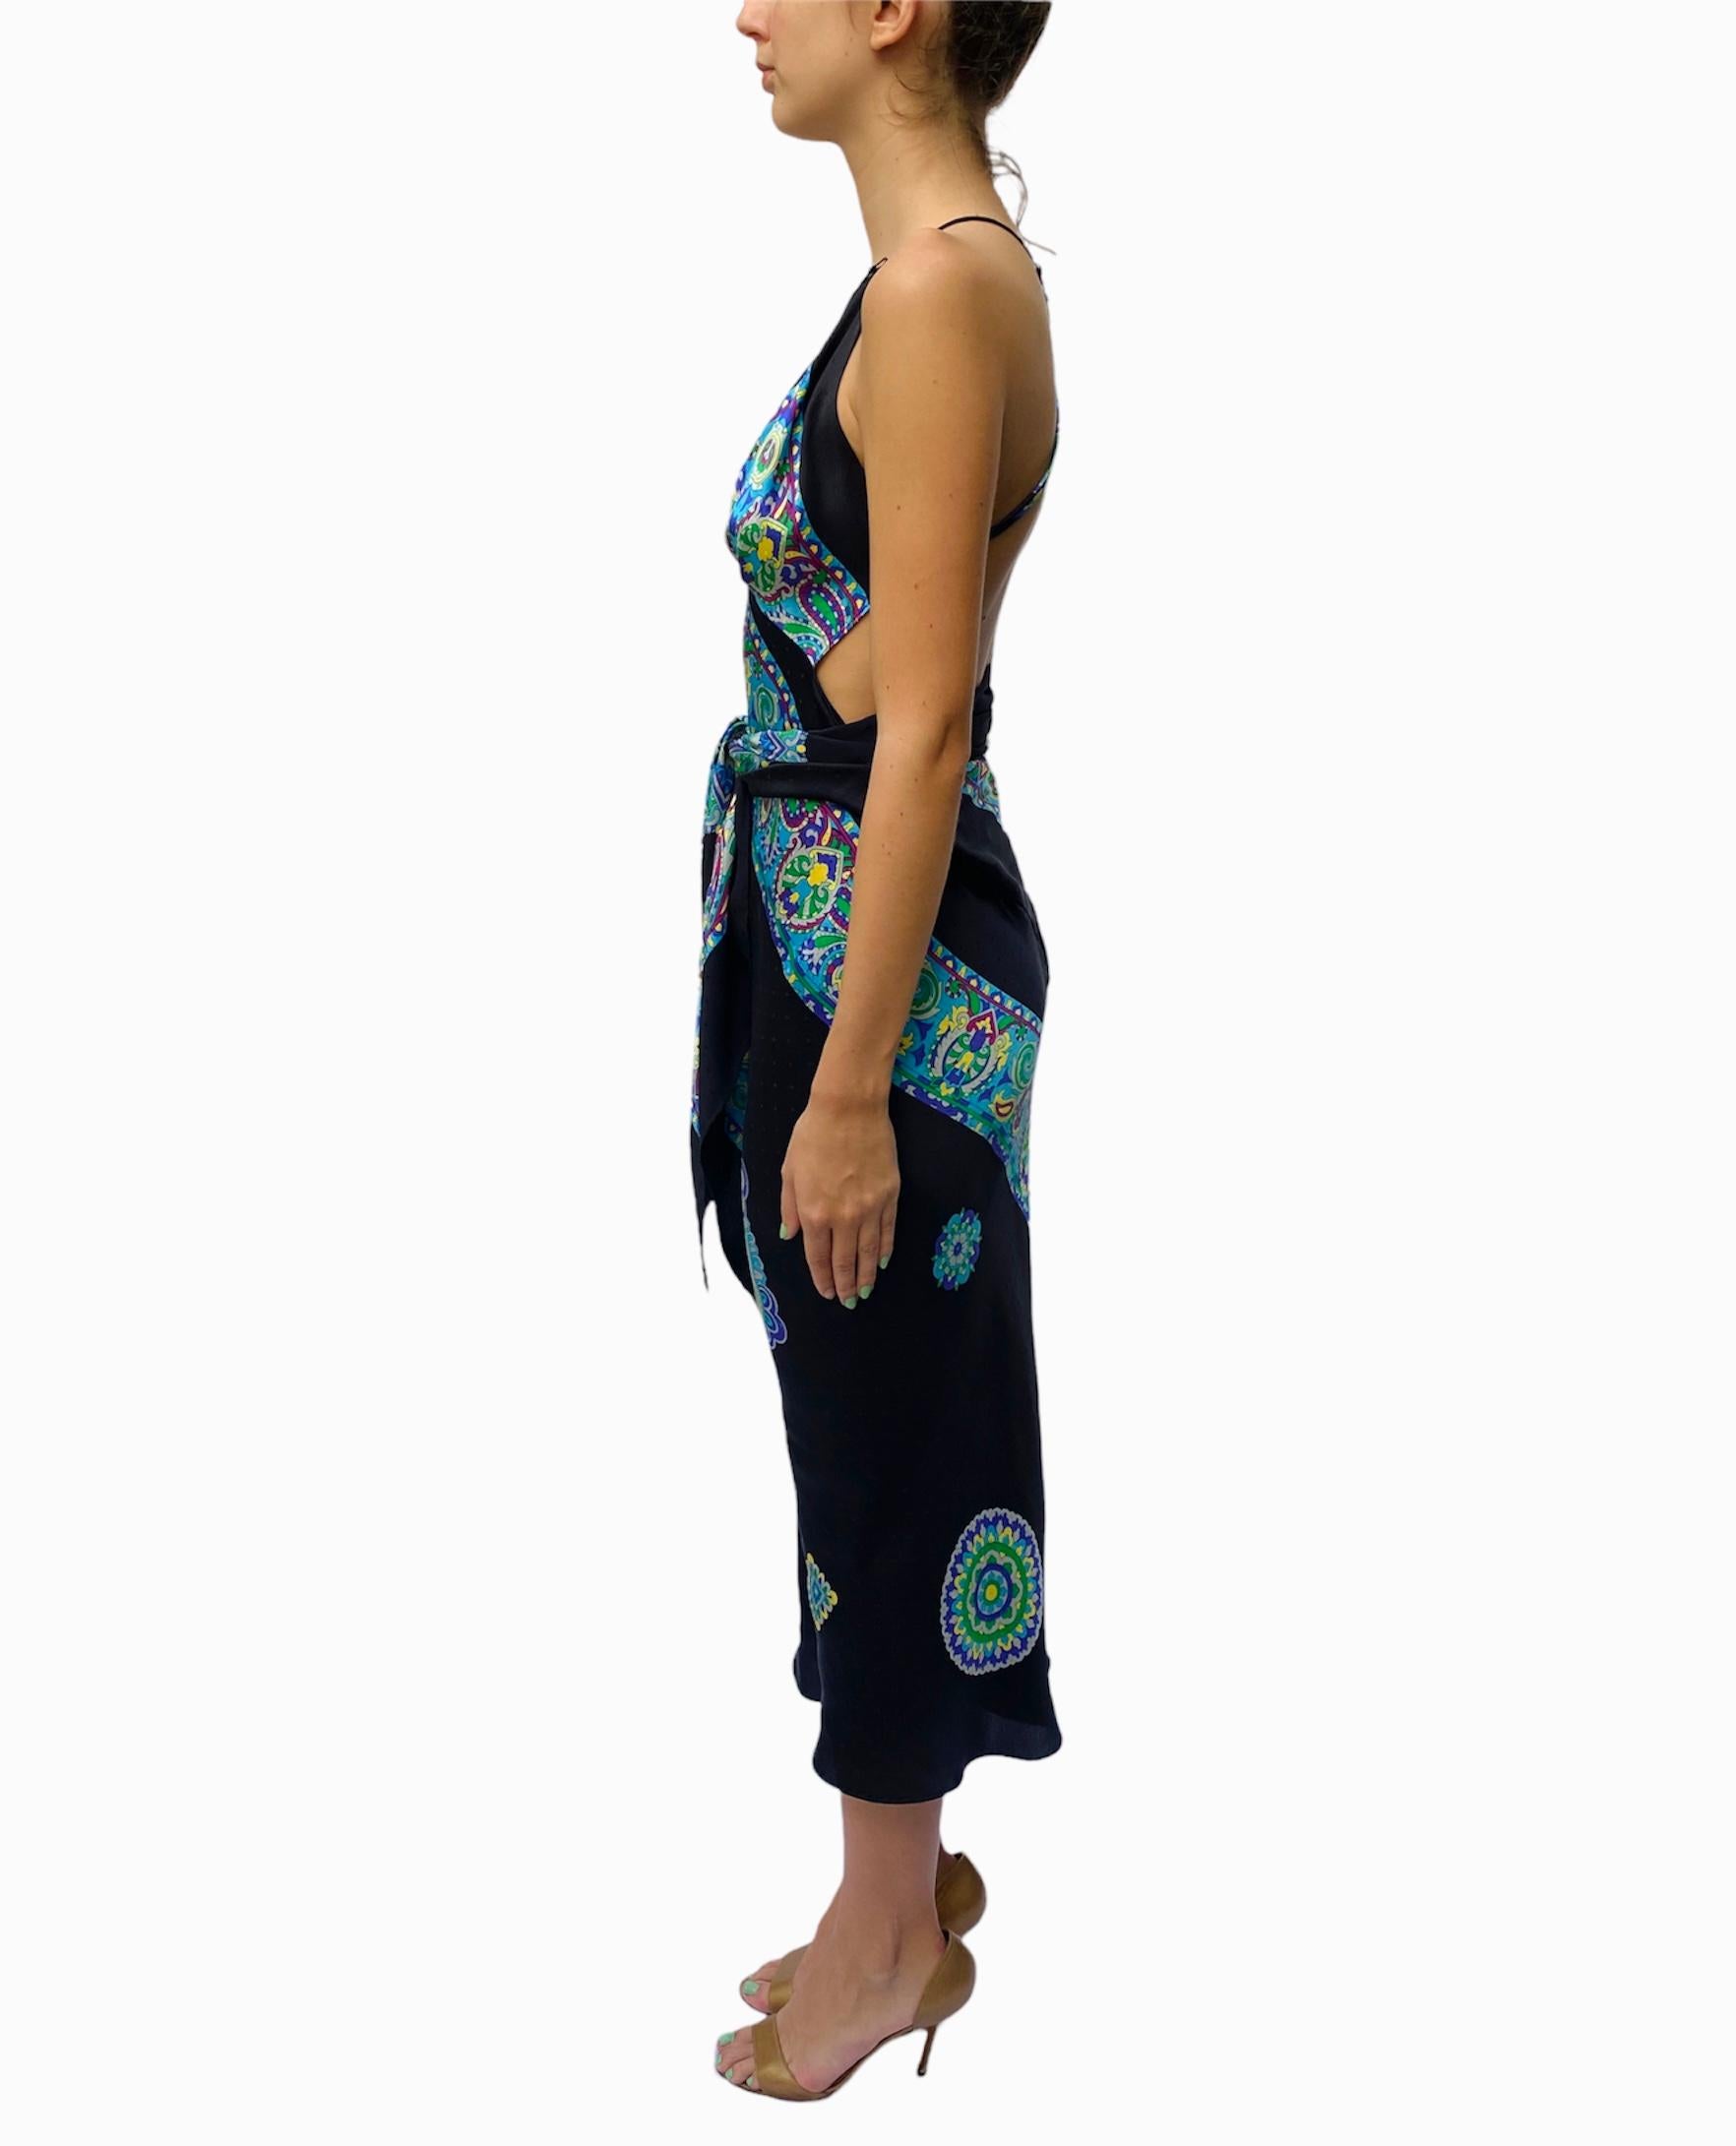 Noir Morphew Collection - Robe écharpe en sergé de soie imprimée noire et bleue multicolore, faite à la main  en vente